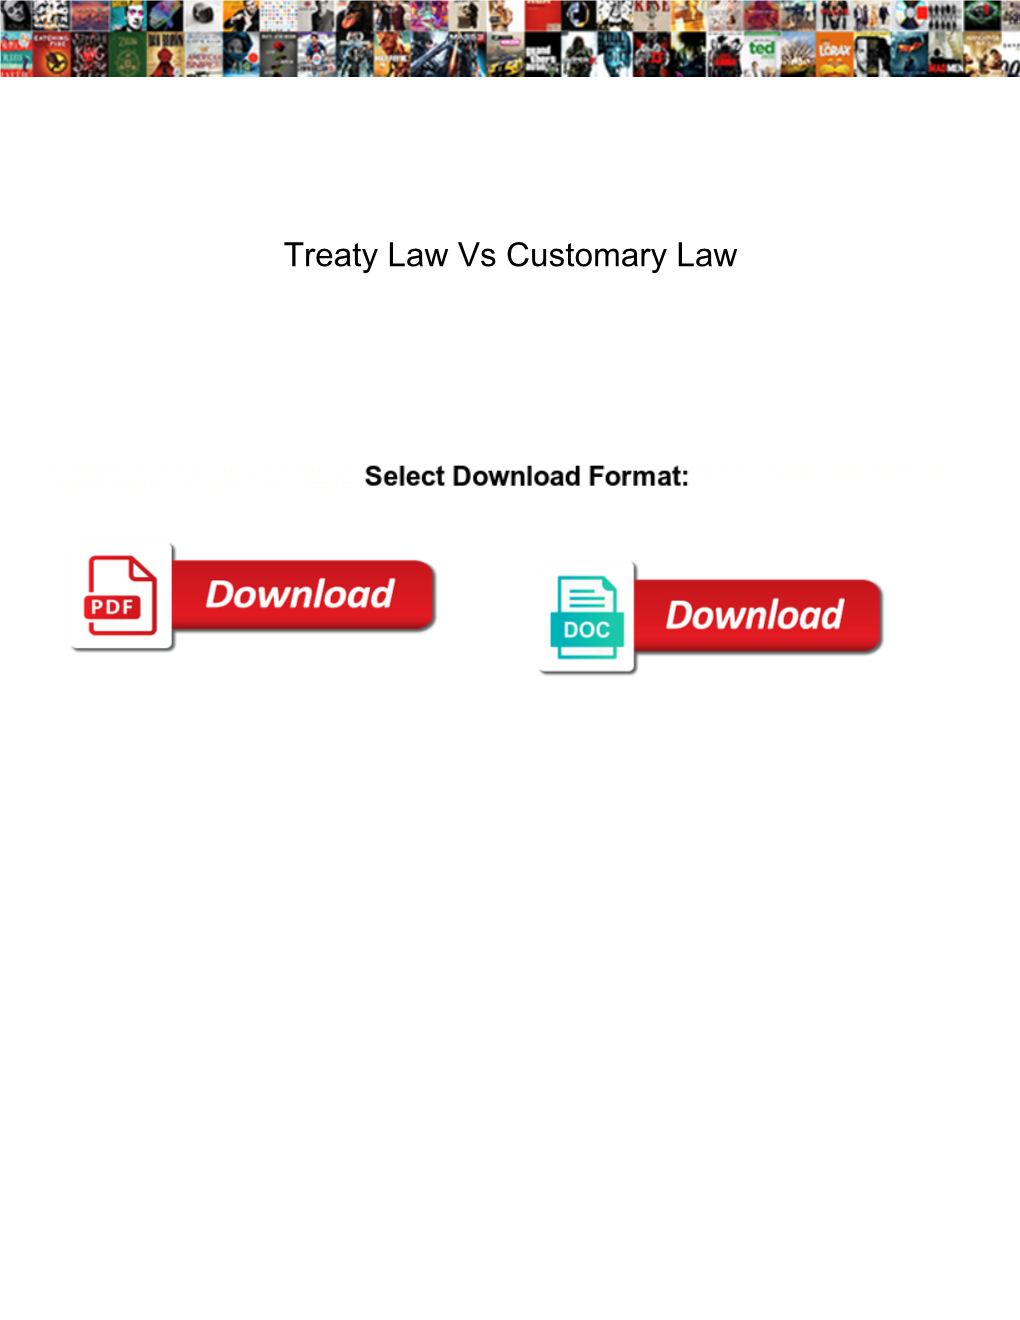 Treaty Law Vs Customary Law